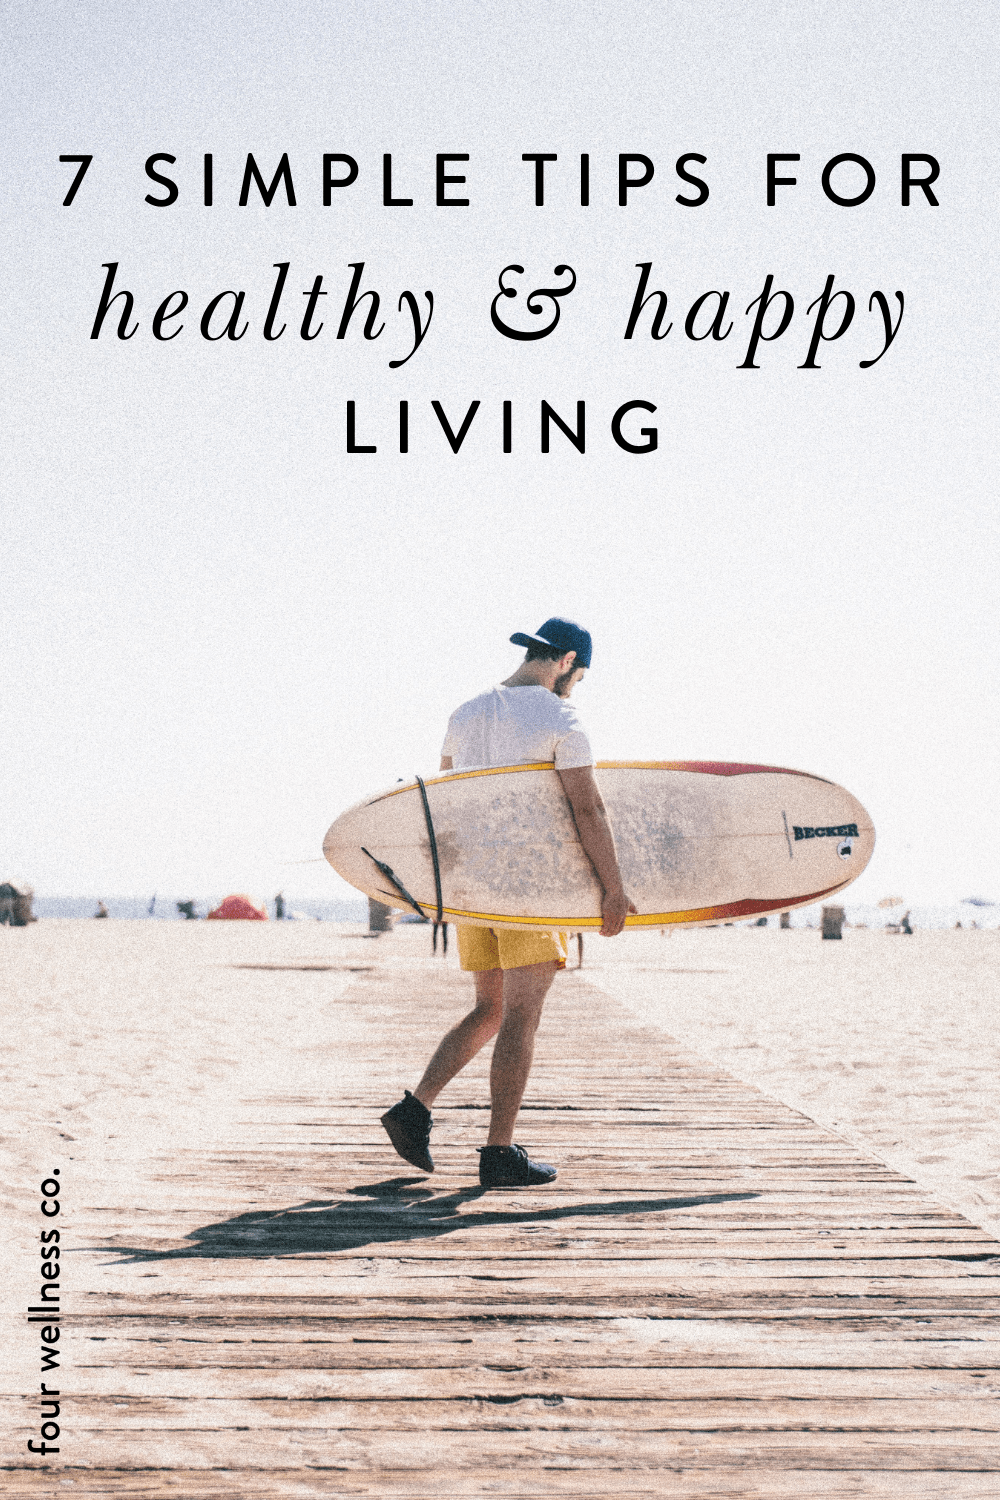 Seven Tips for a Happier, Healthier Life